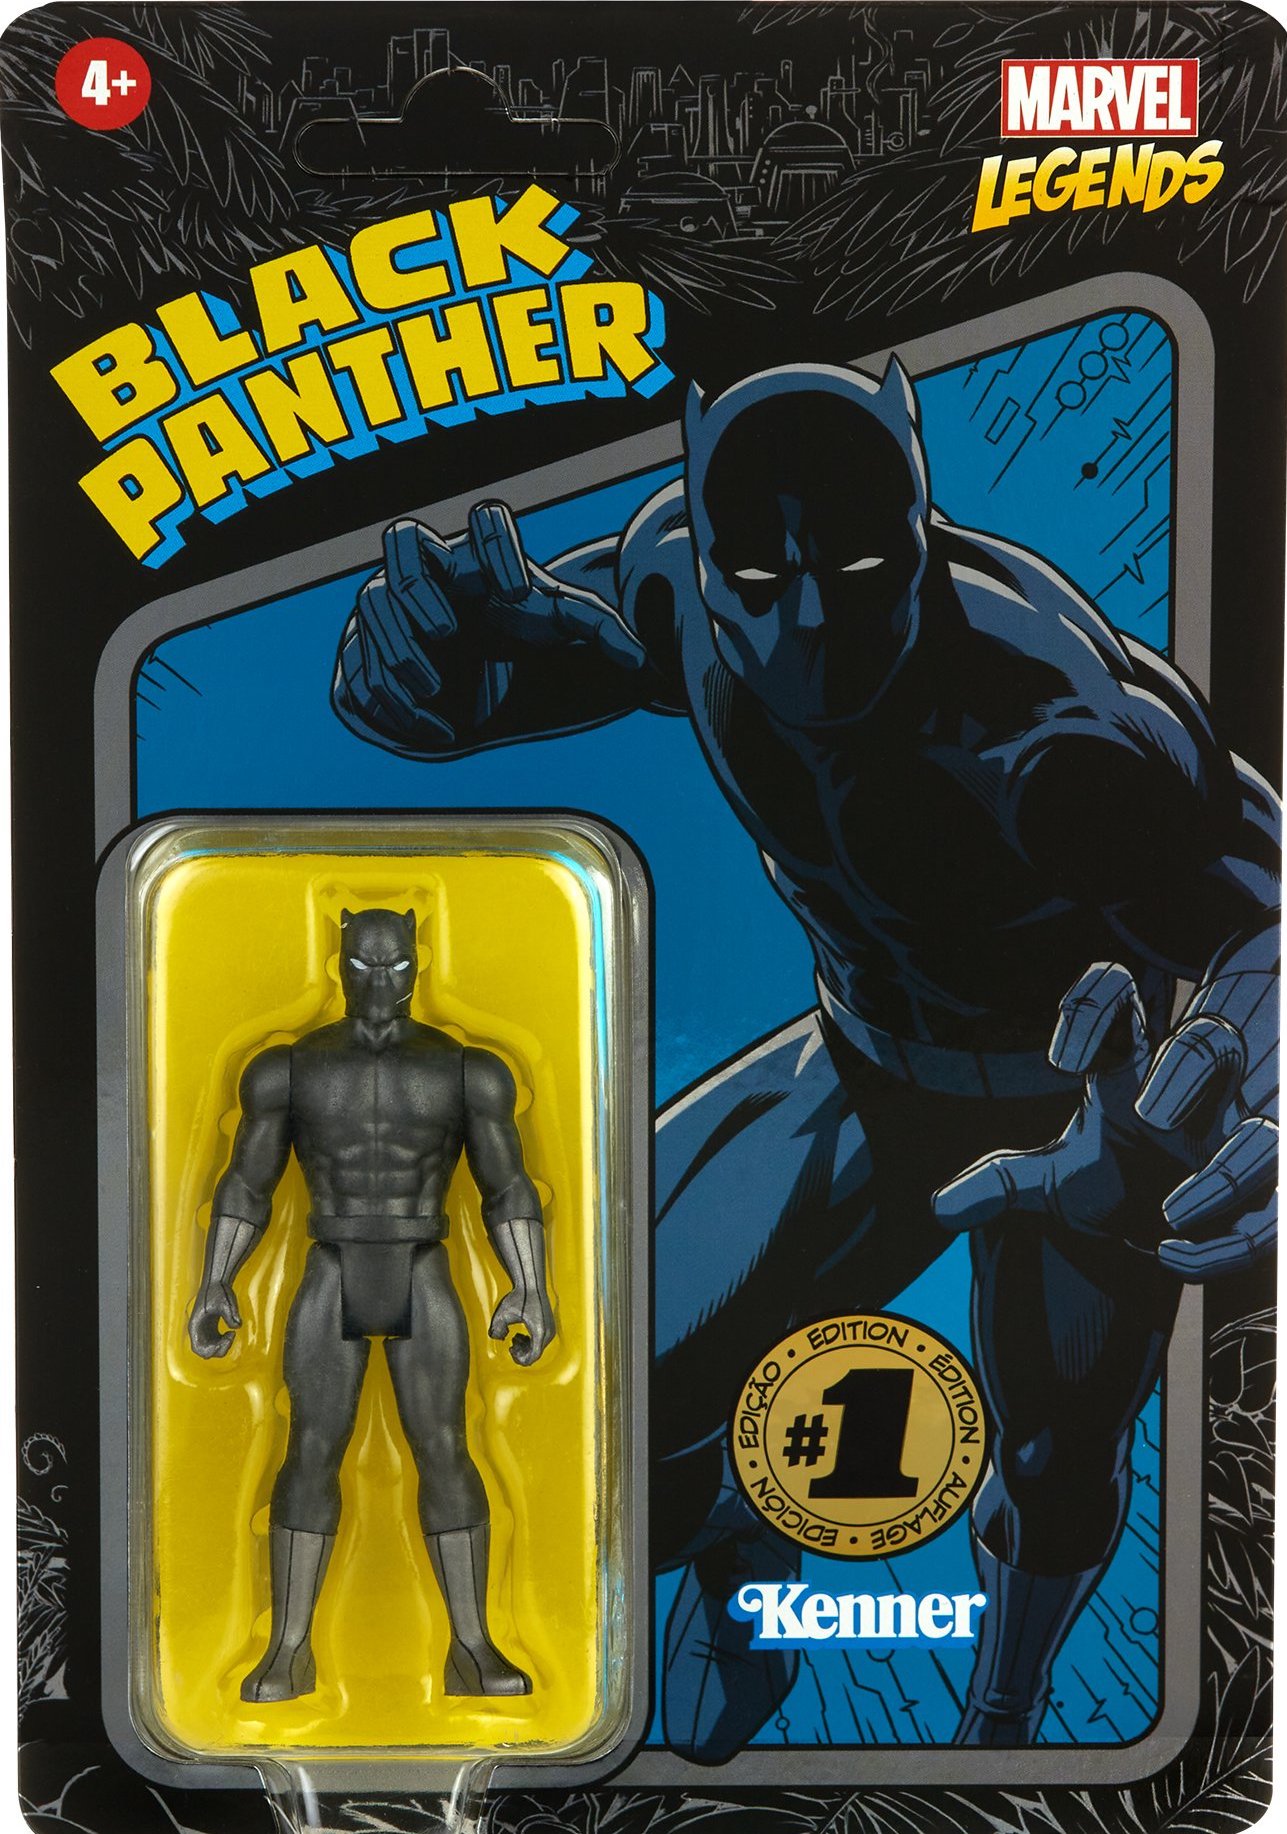 Marvel Legends Retro Black Panther Action Figure Kenner for sale online 